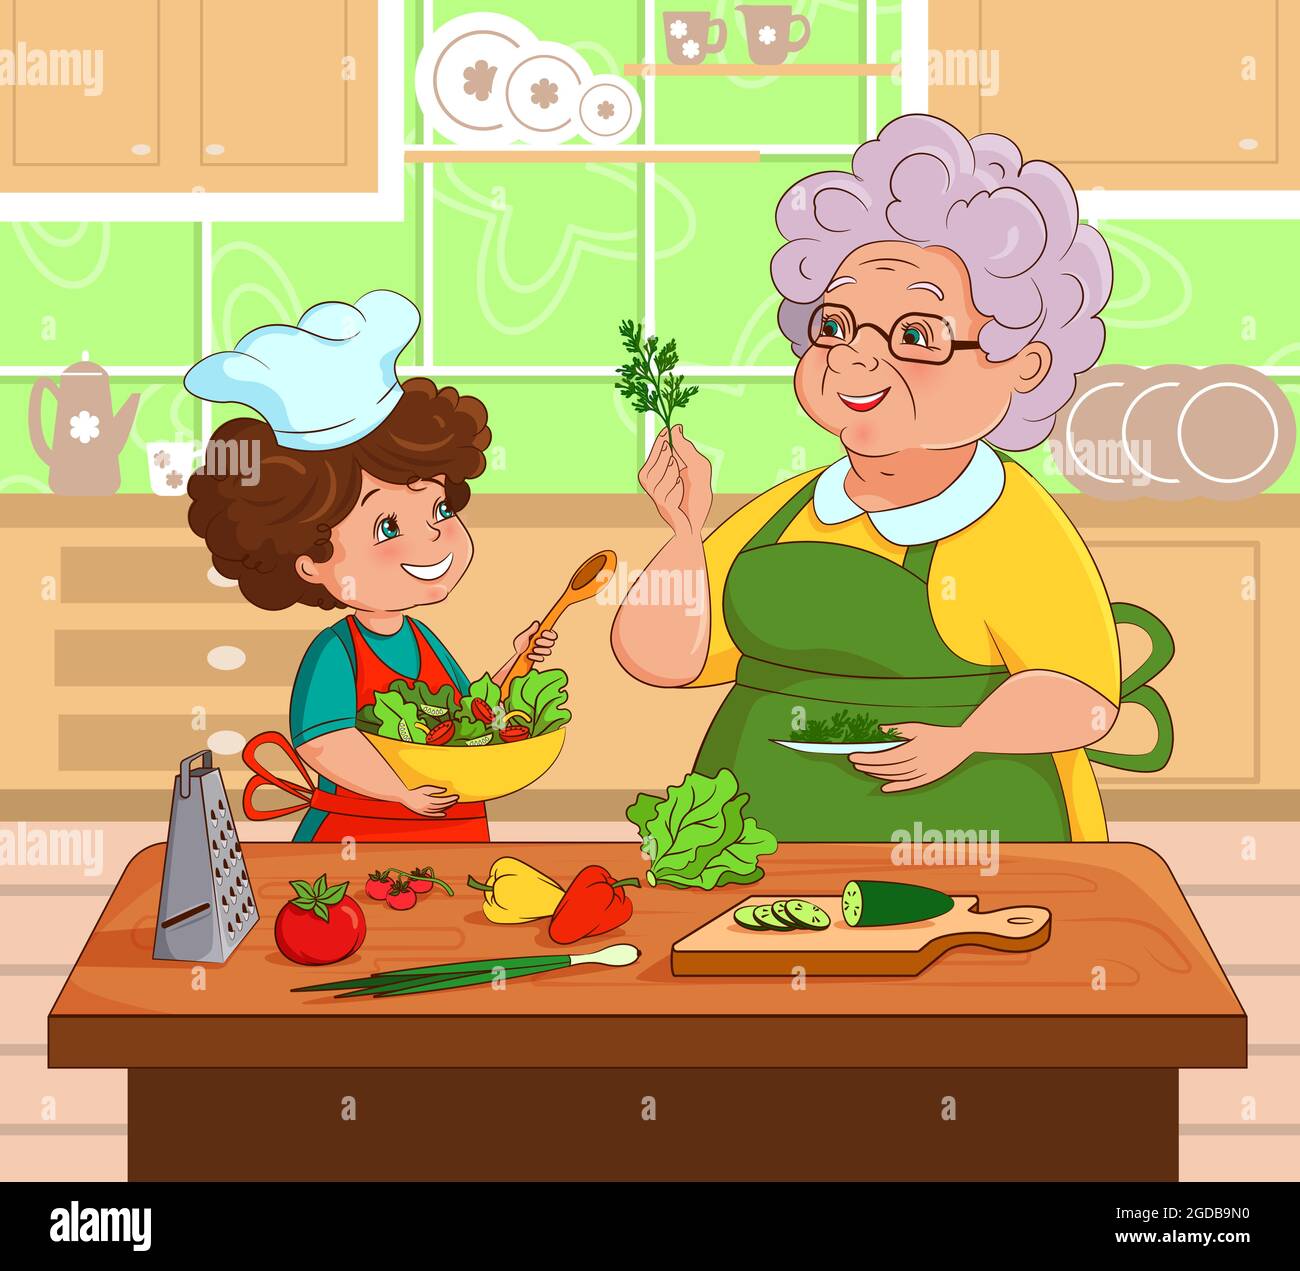 Großmutter und Enkelin bereiten gemeinsam in der Küche Salat zu. Vektor, Illustration im Cartoon-Stil, flach, Comic Stock Vektor